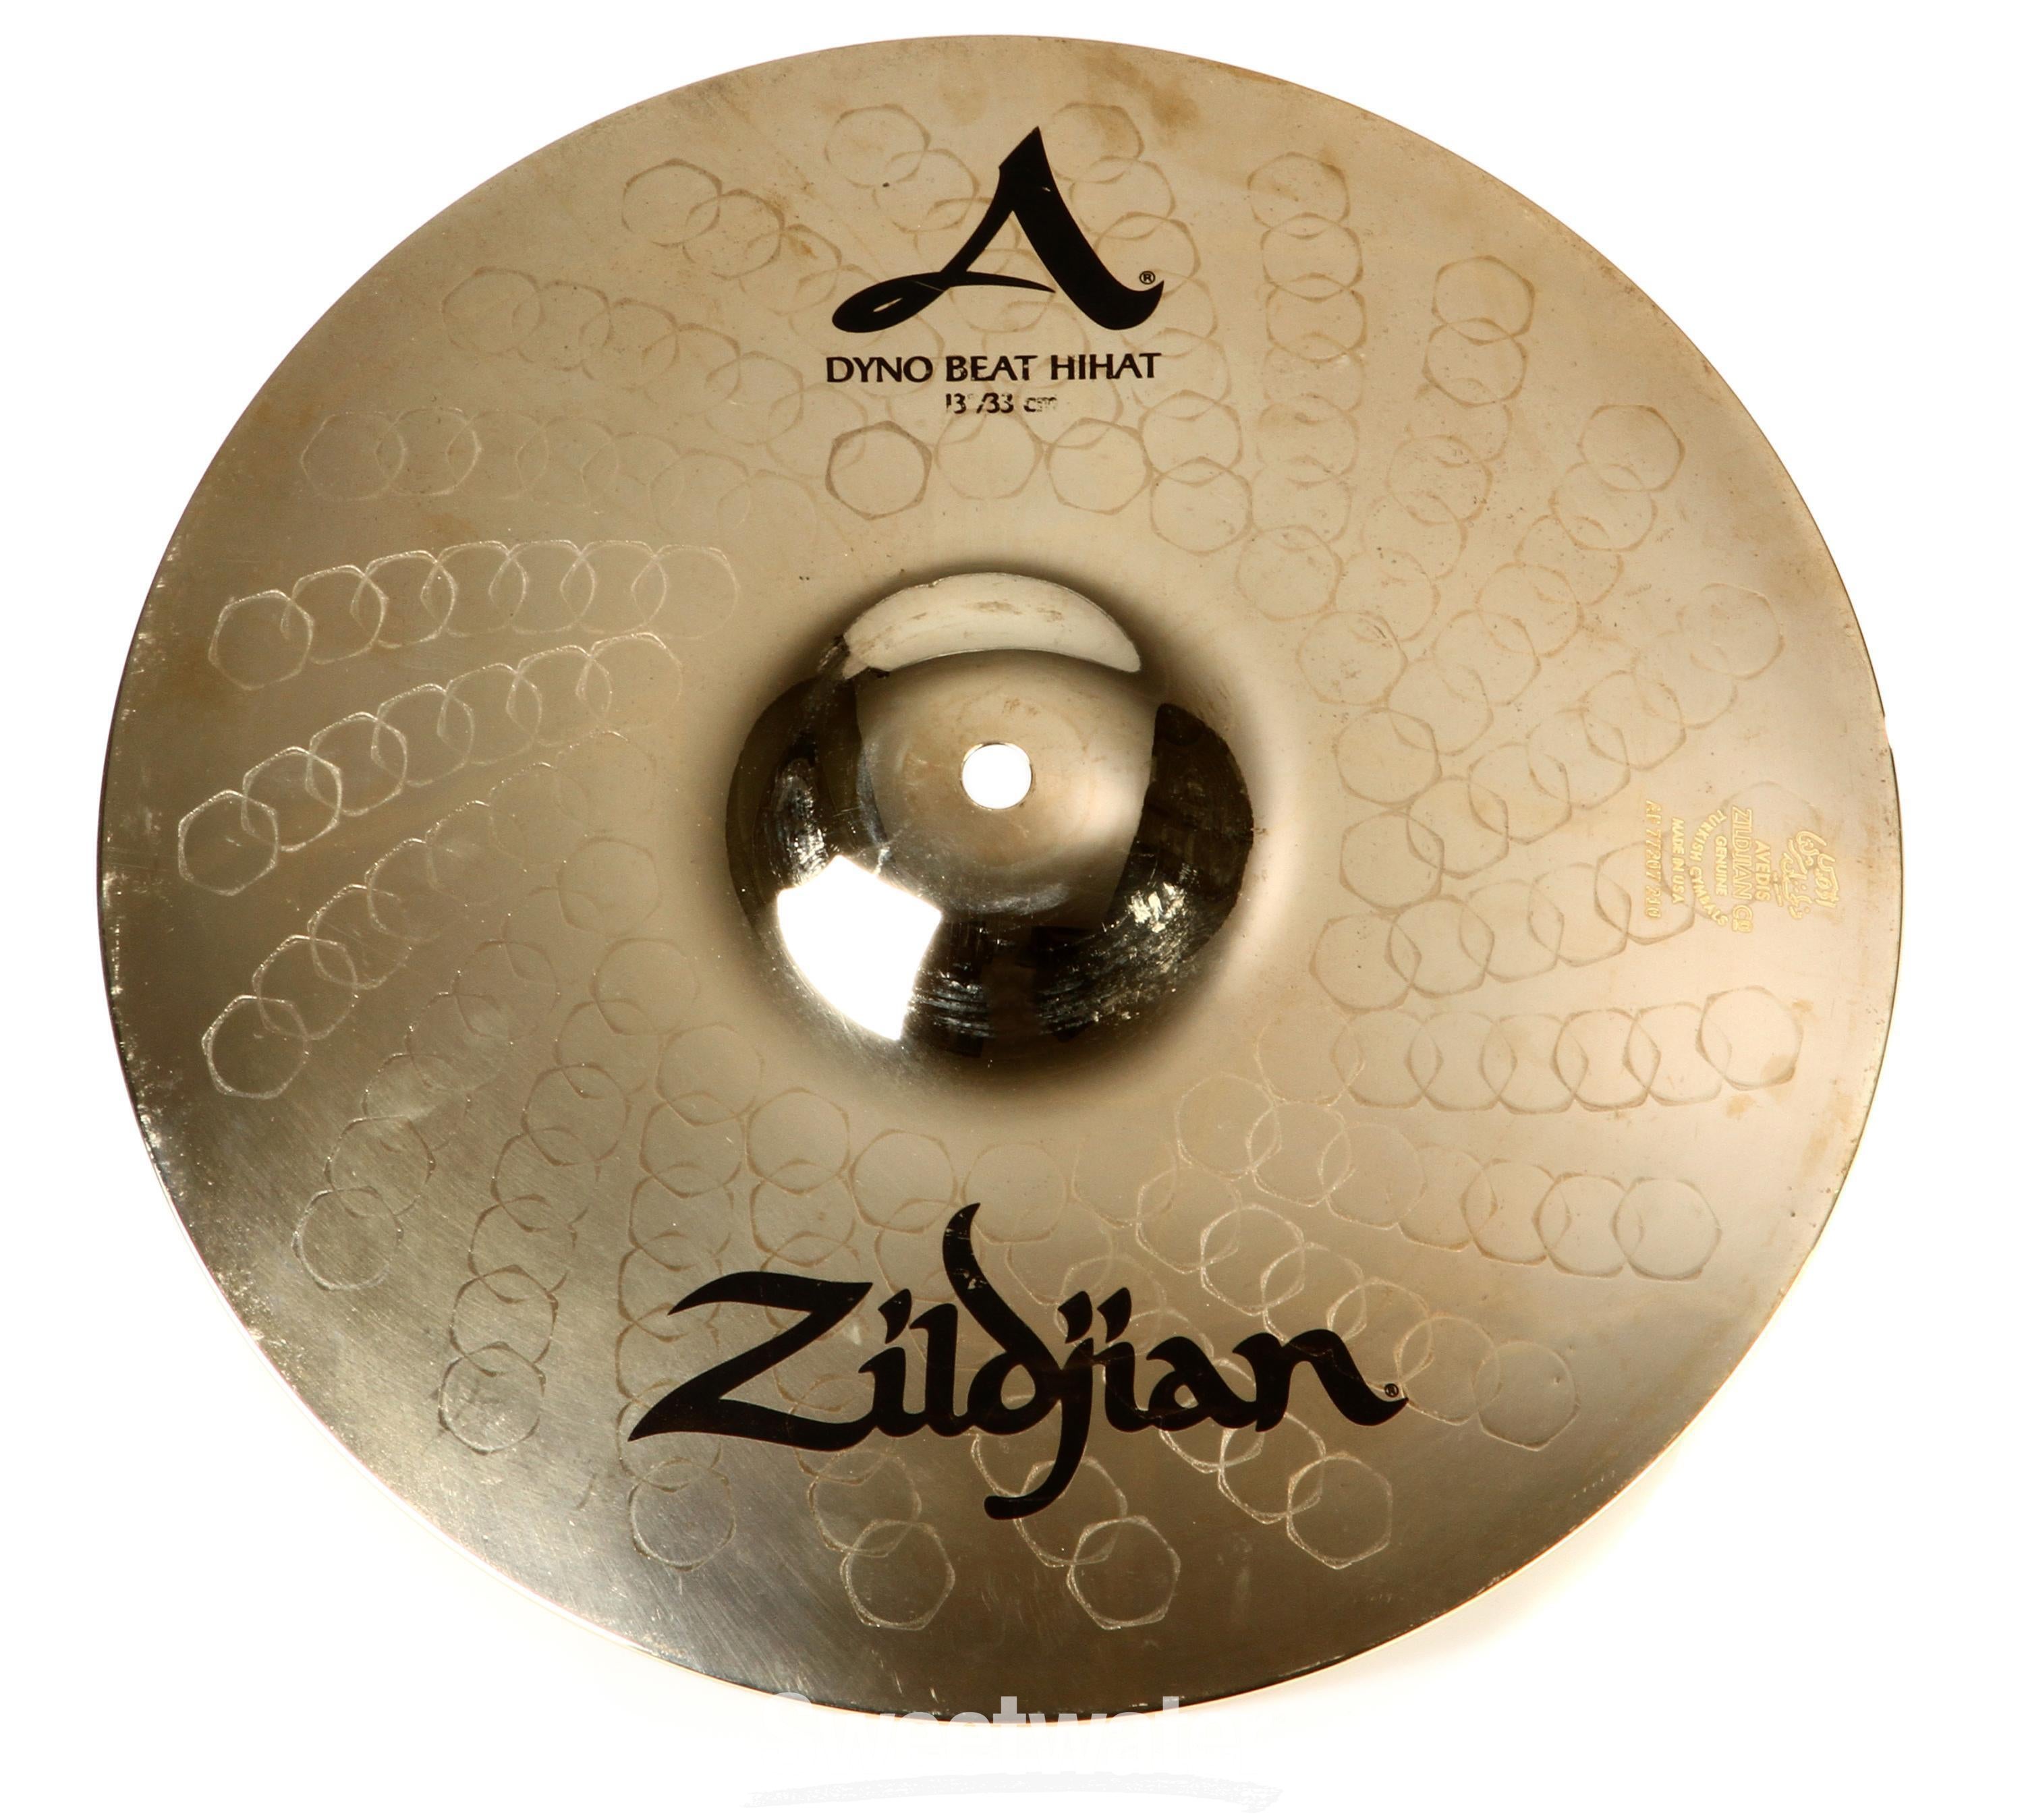 Zildjian 13 inch K/Z Special Hi-hat Cymbals | Sweetwater